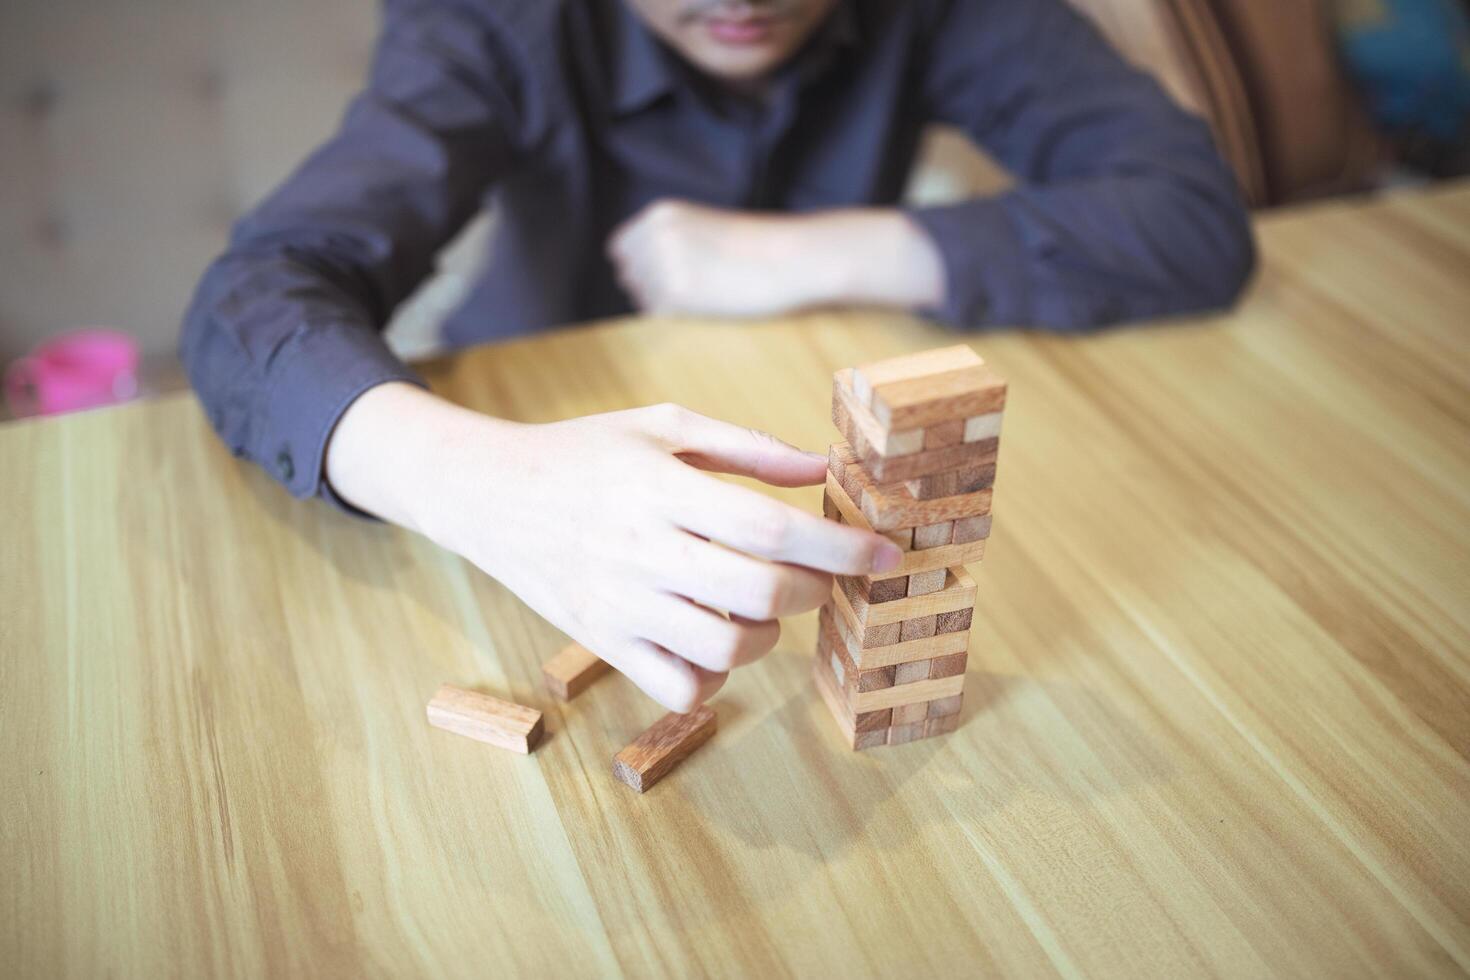 attività commerciale strategia concetto con mani giocando un' di legno bloccare Torre gioco, simboleggiante rischio e stabilità. pianificazione rischio gestione foto